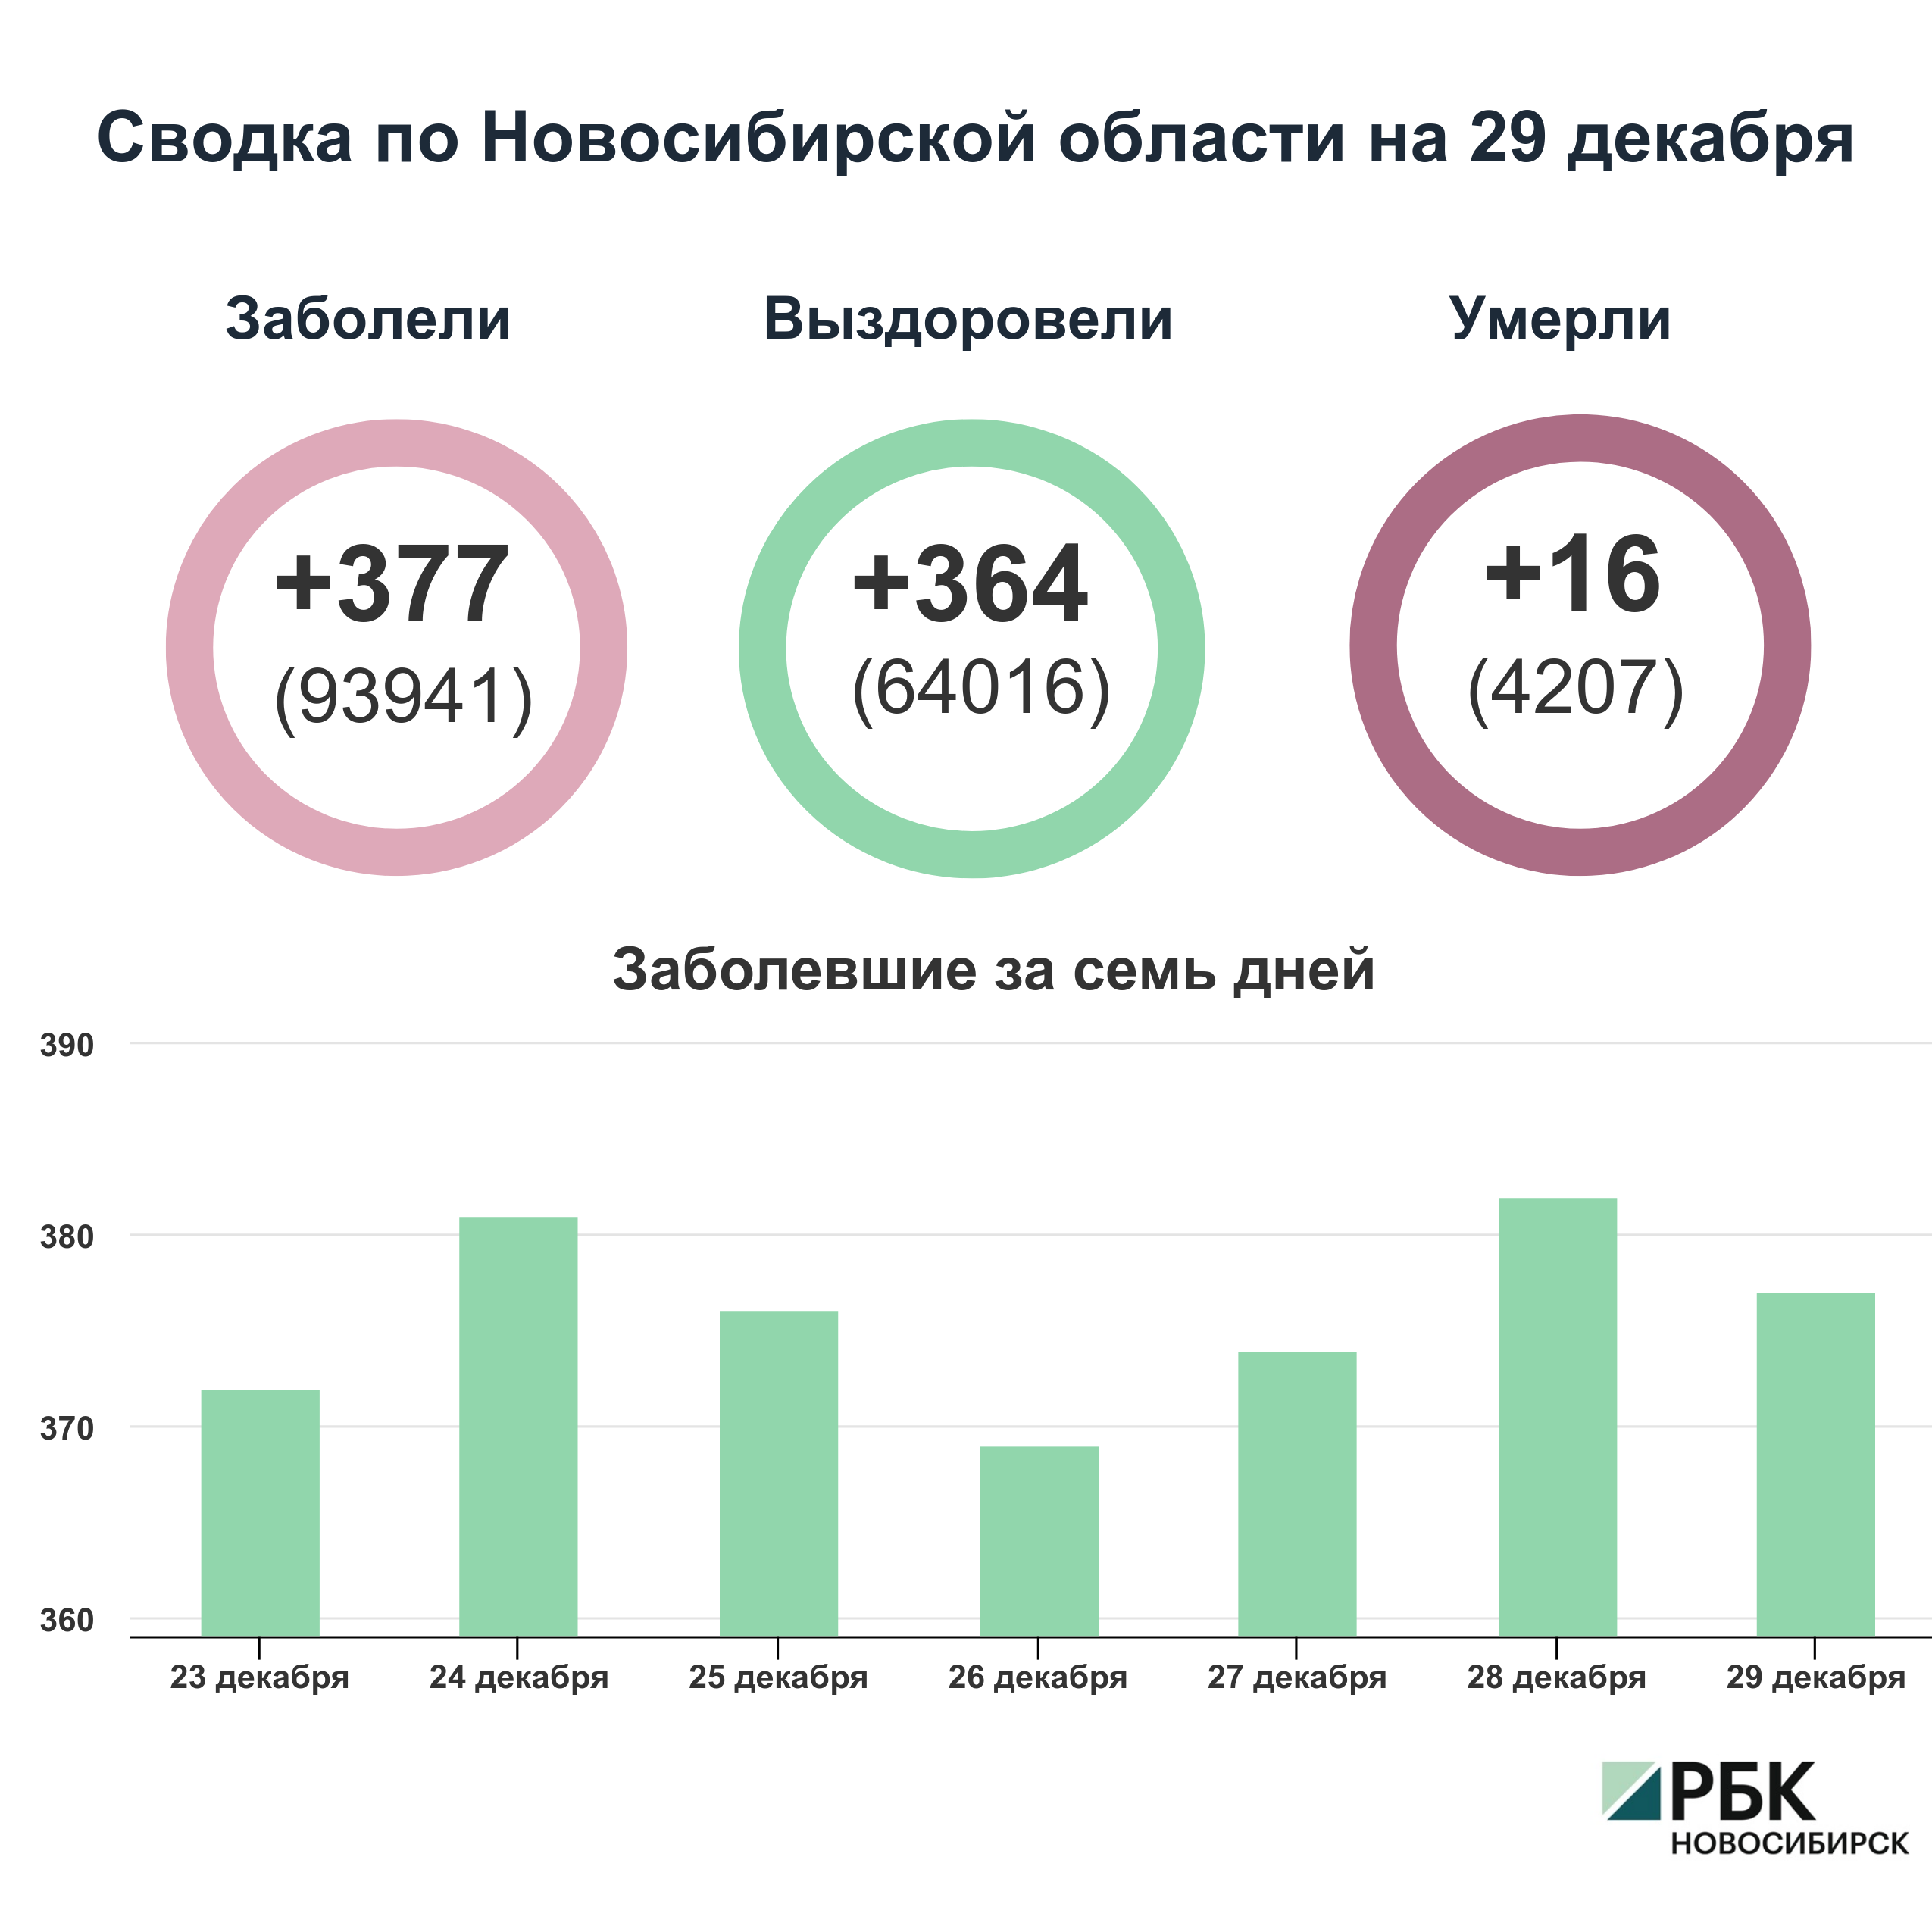 Коронавирус в Новосибирске: сводка на 29 декабря